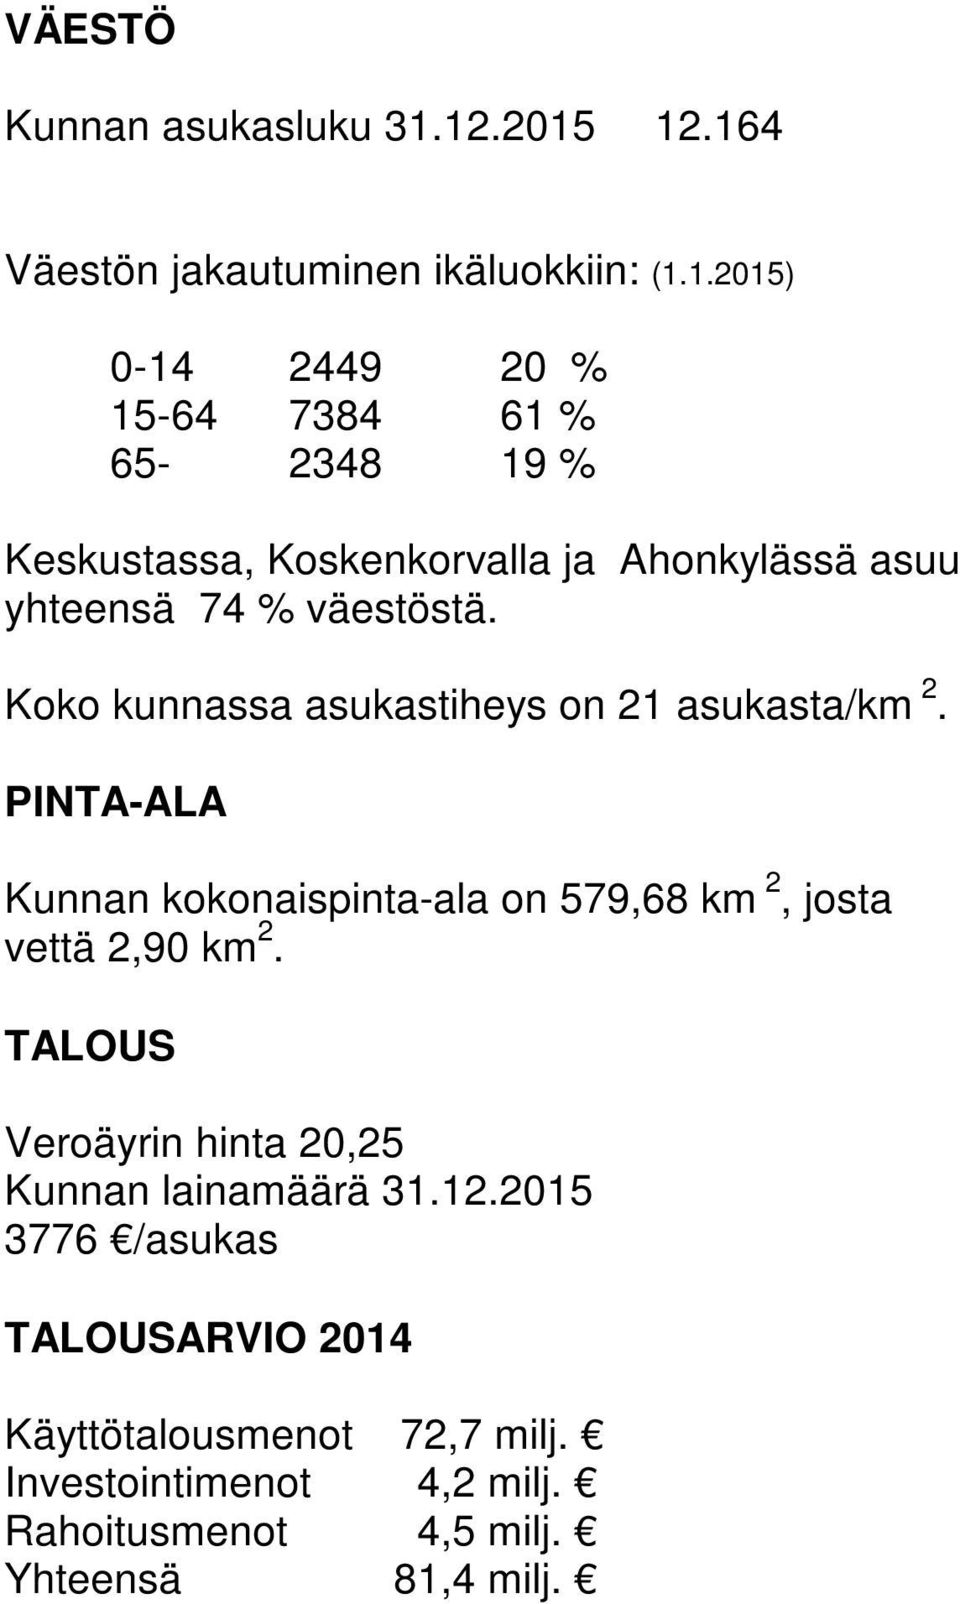 Koko kunnassa asukastiheys on 21 asukasta/km 2. PINTA-ALA Kunnan kokonaispinta-ala on 579,68 km 2, josta vettä 2,90 km 2.